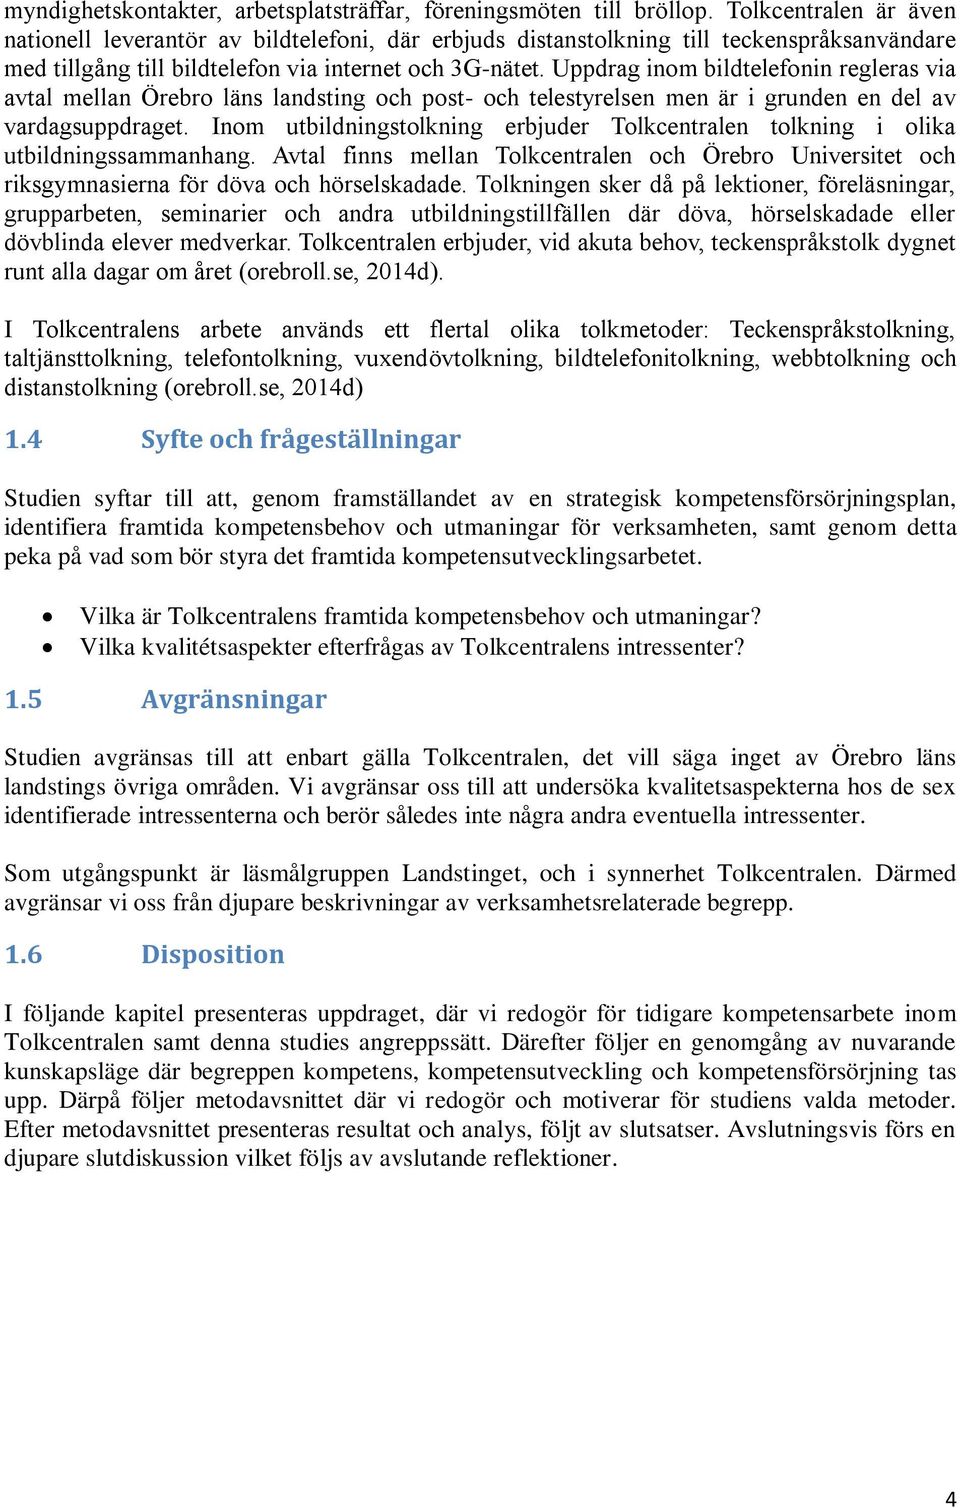 Uppdrag inom bildtelefonin regleras via avtal mellan Örebro läns landsting och post- och telestyrelsen men är i grunden en del av vardagsuppdraget.